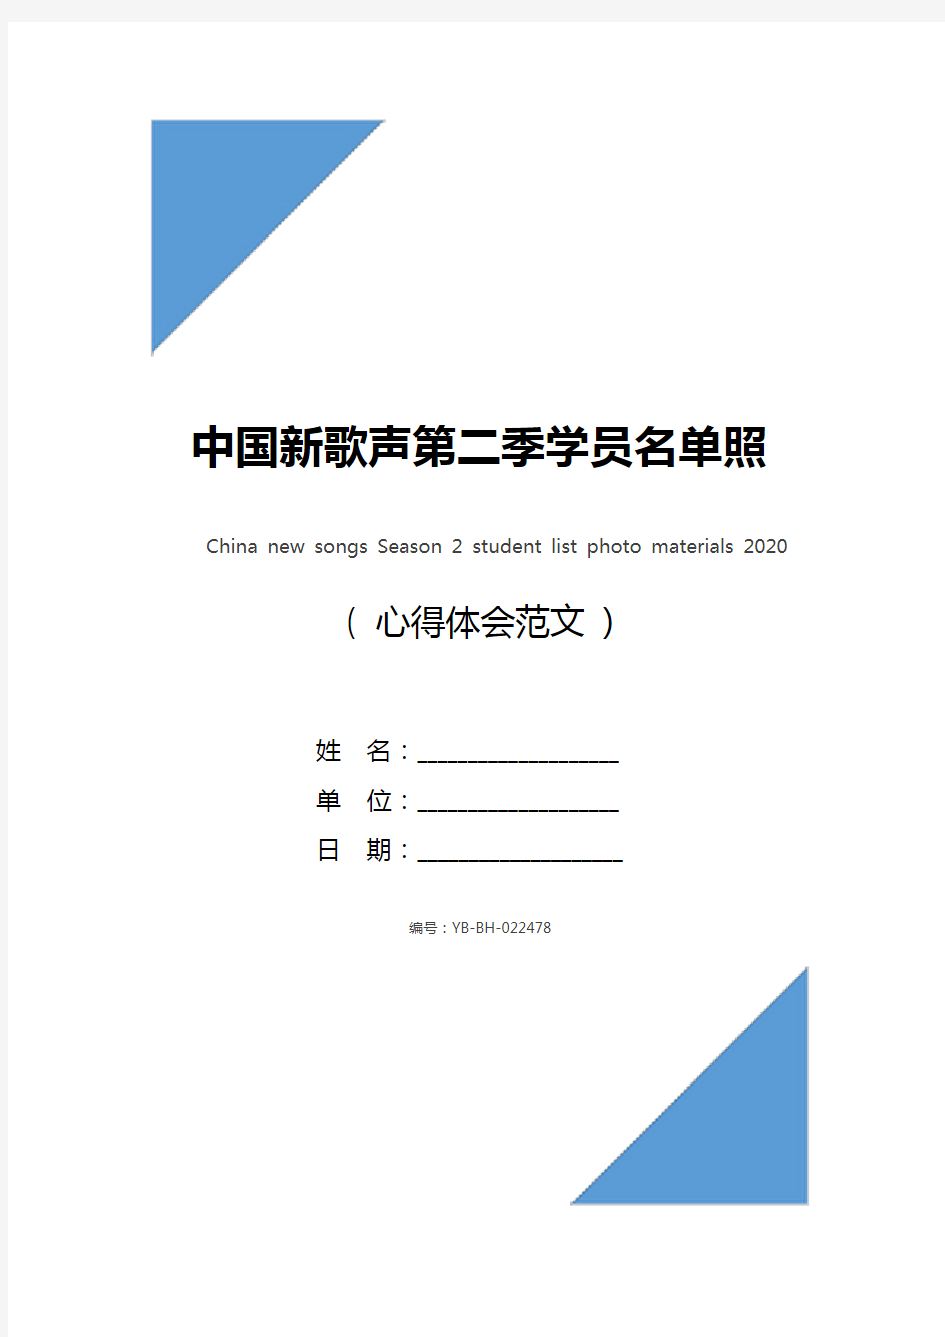 中国新歌声第二季学员名单照片资料2020